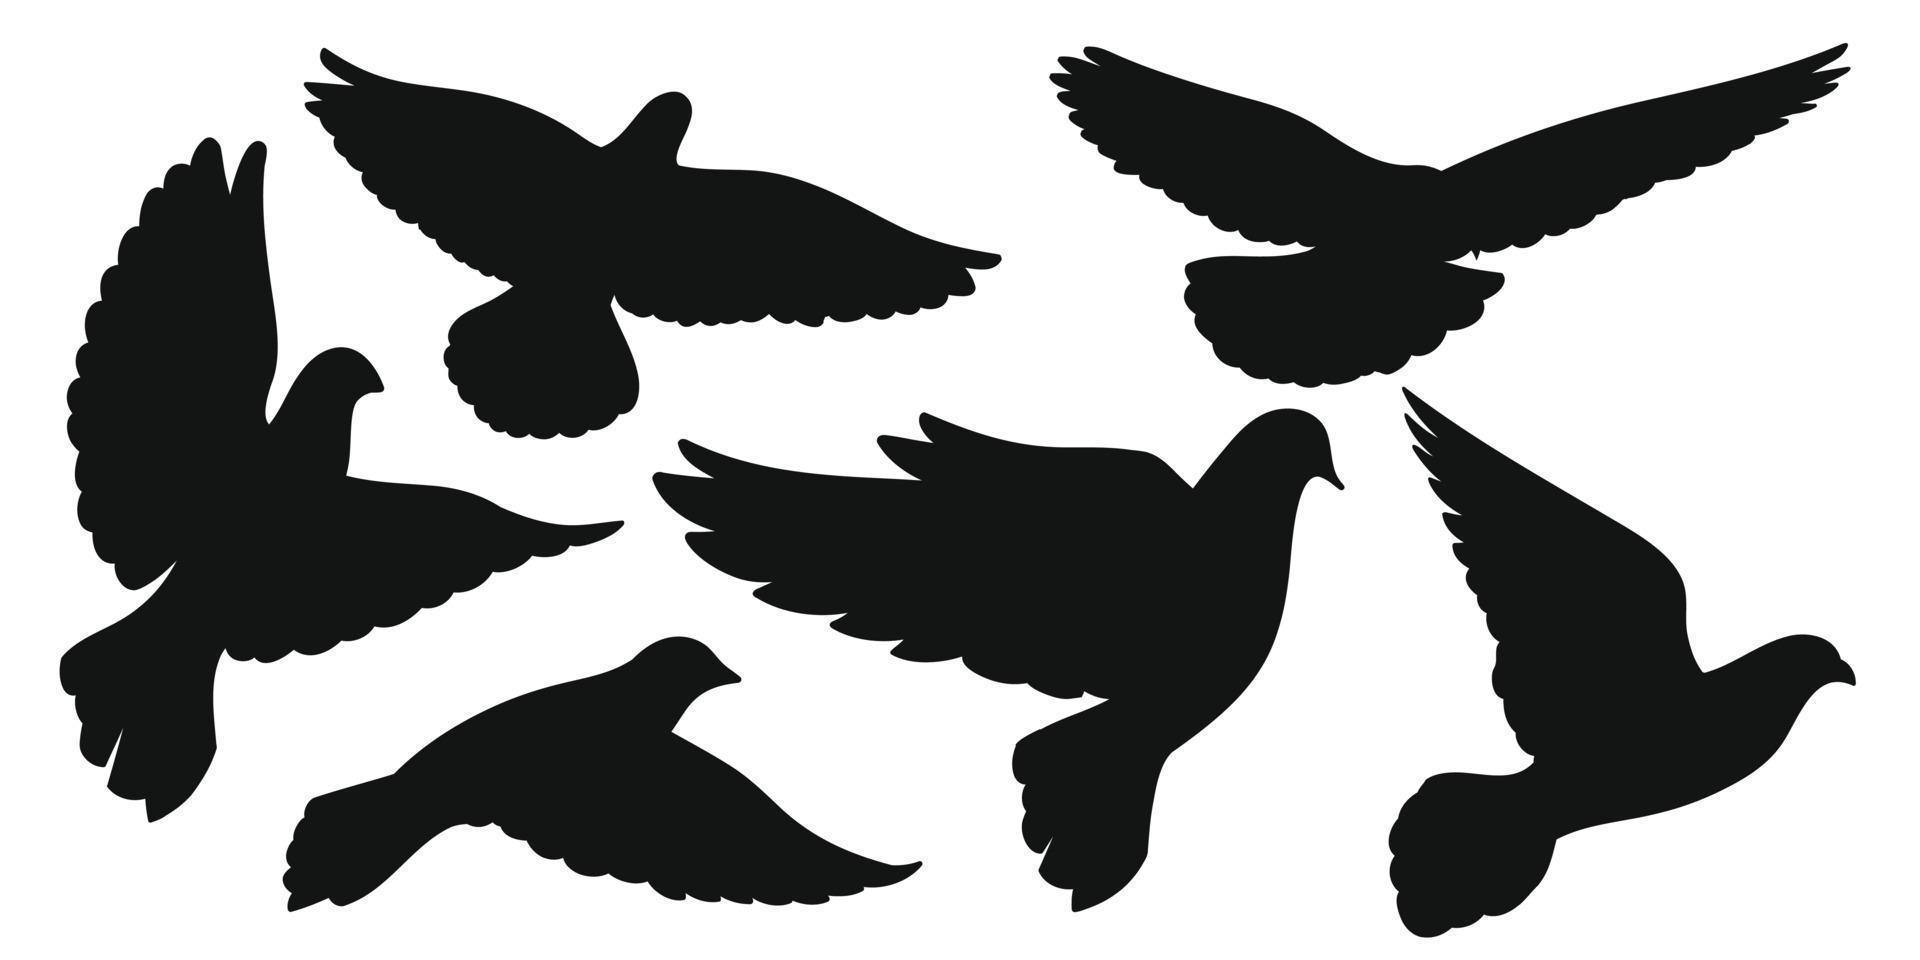 Satz schwarze Silhouetten von Tauben im Flug. Vektor-Illustration vektor